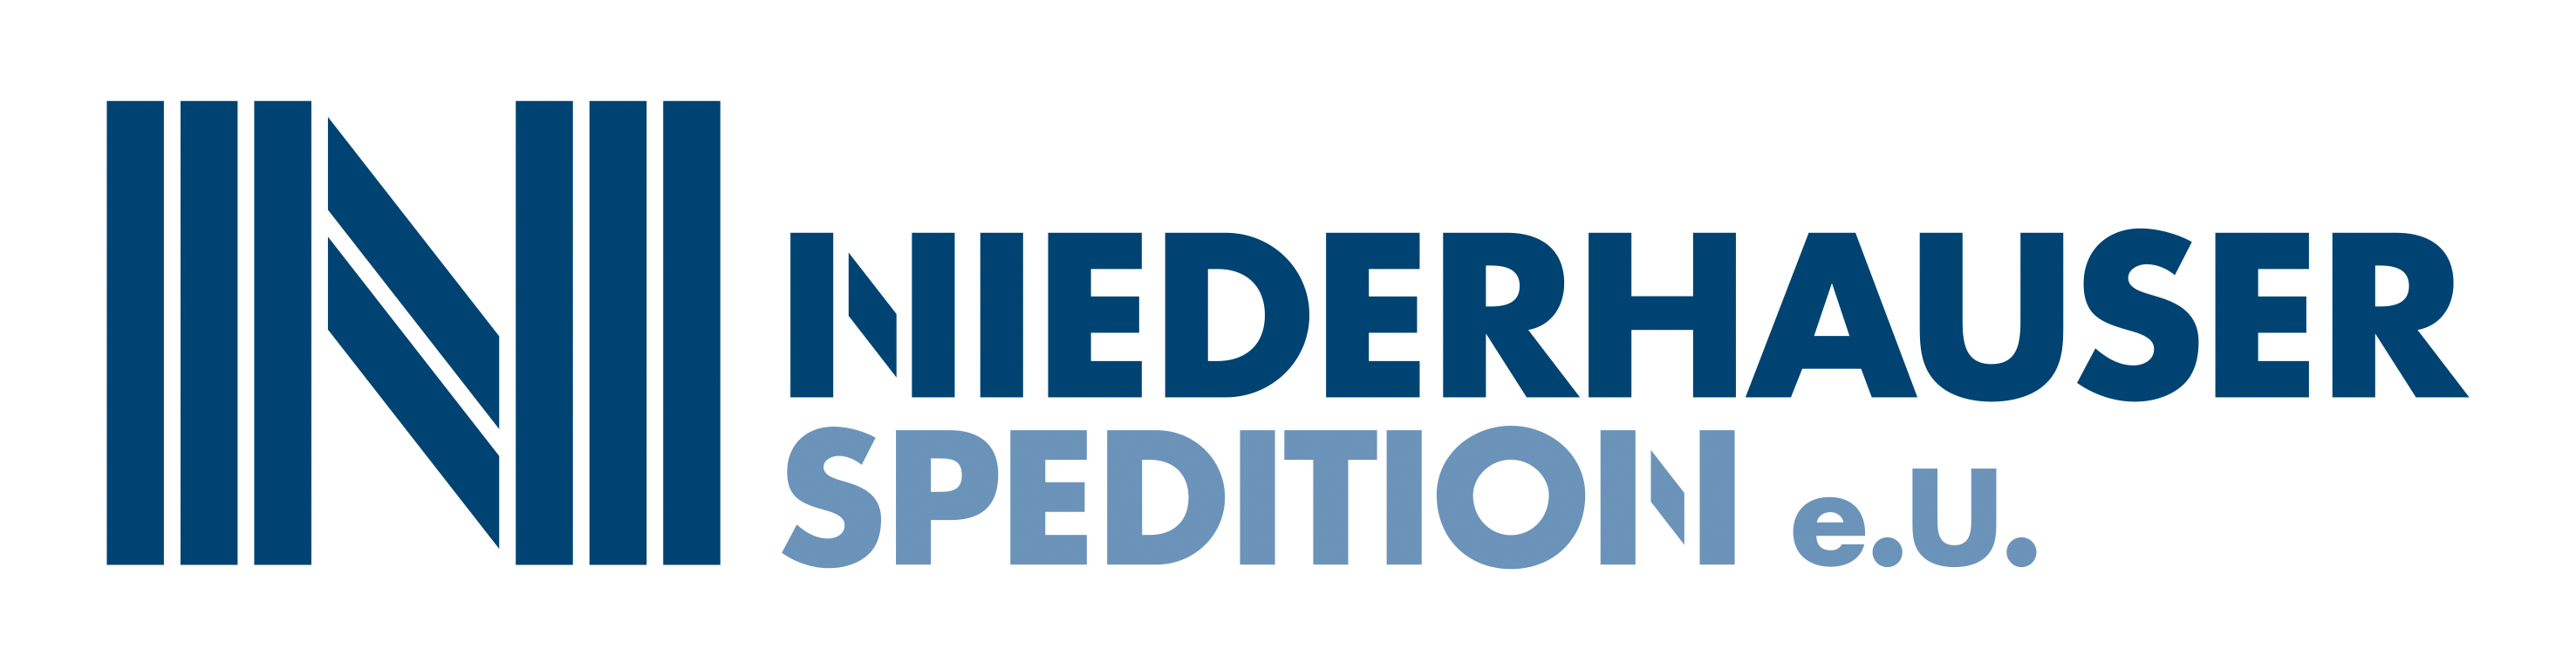 Niederhauser Spedition e.U.